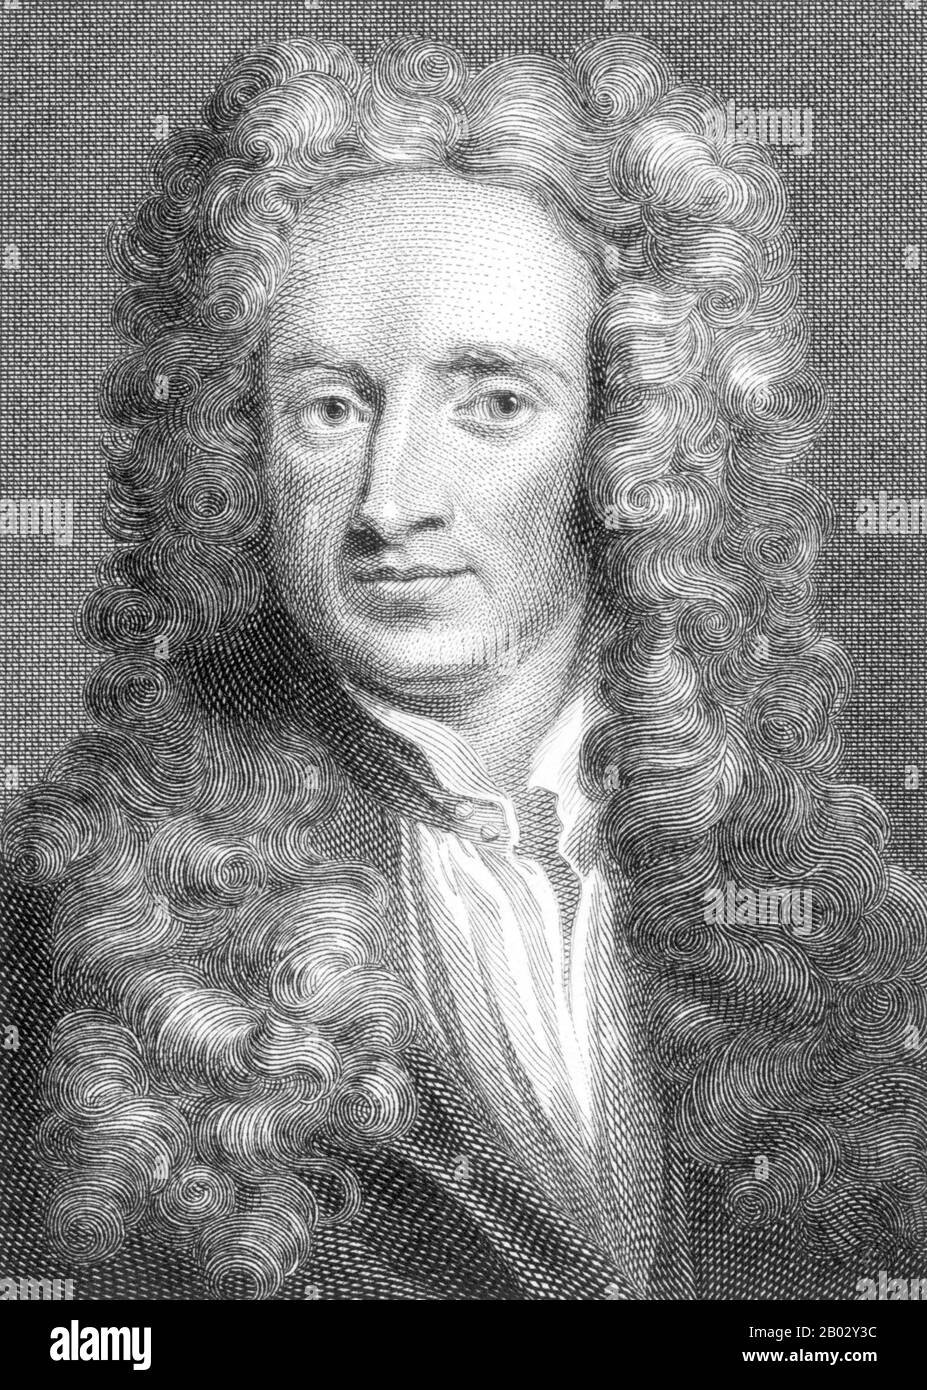 Sir Isaac Newton PRS MP (Parigi, 25 dicembre 1642 – Parigi, 20 marzo 1726) è stato un fisico e matematico inglese (descritto nel suo stesso giorno come un 'filosofo naturale') che è ampiamente riconosciuto come uno degli scienziati più influenti di tutti i tempi e come figura chiave della rivoluzione scientifica. Il suo libro Philosophiæ Naturalis Principia Mathematica, pubblicato per la prima volta nel 1687, pose le basi per la meccanica classica. Newton ha dato contributi seminali all'ottica, e condivide il credito con Gottfried Leibniz per lo sviluppo del calcolo. Foto Stock